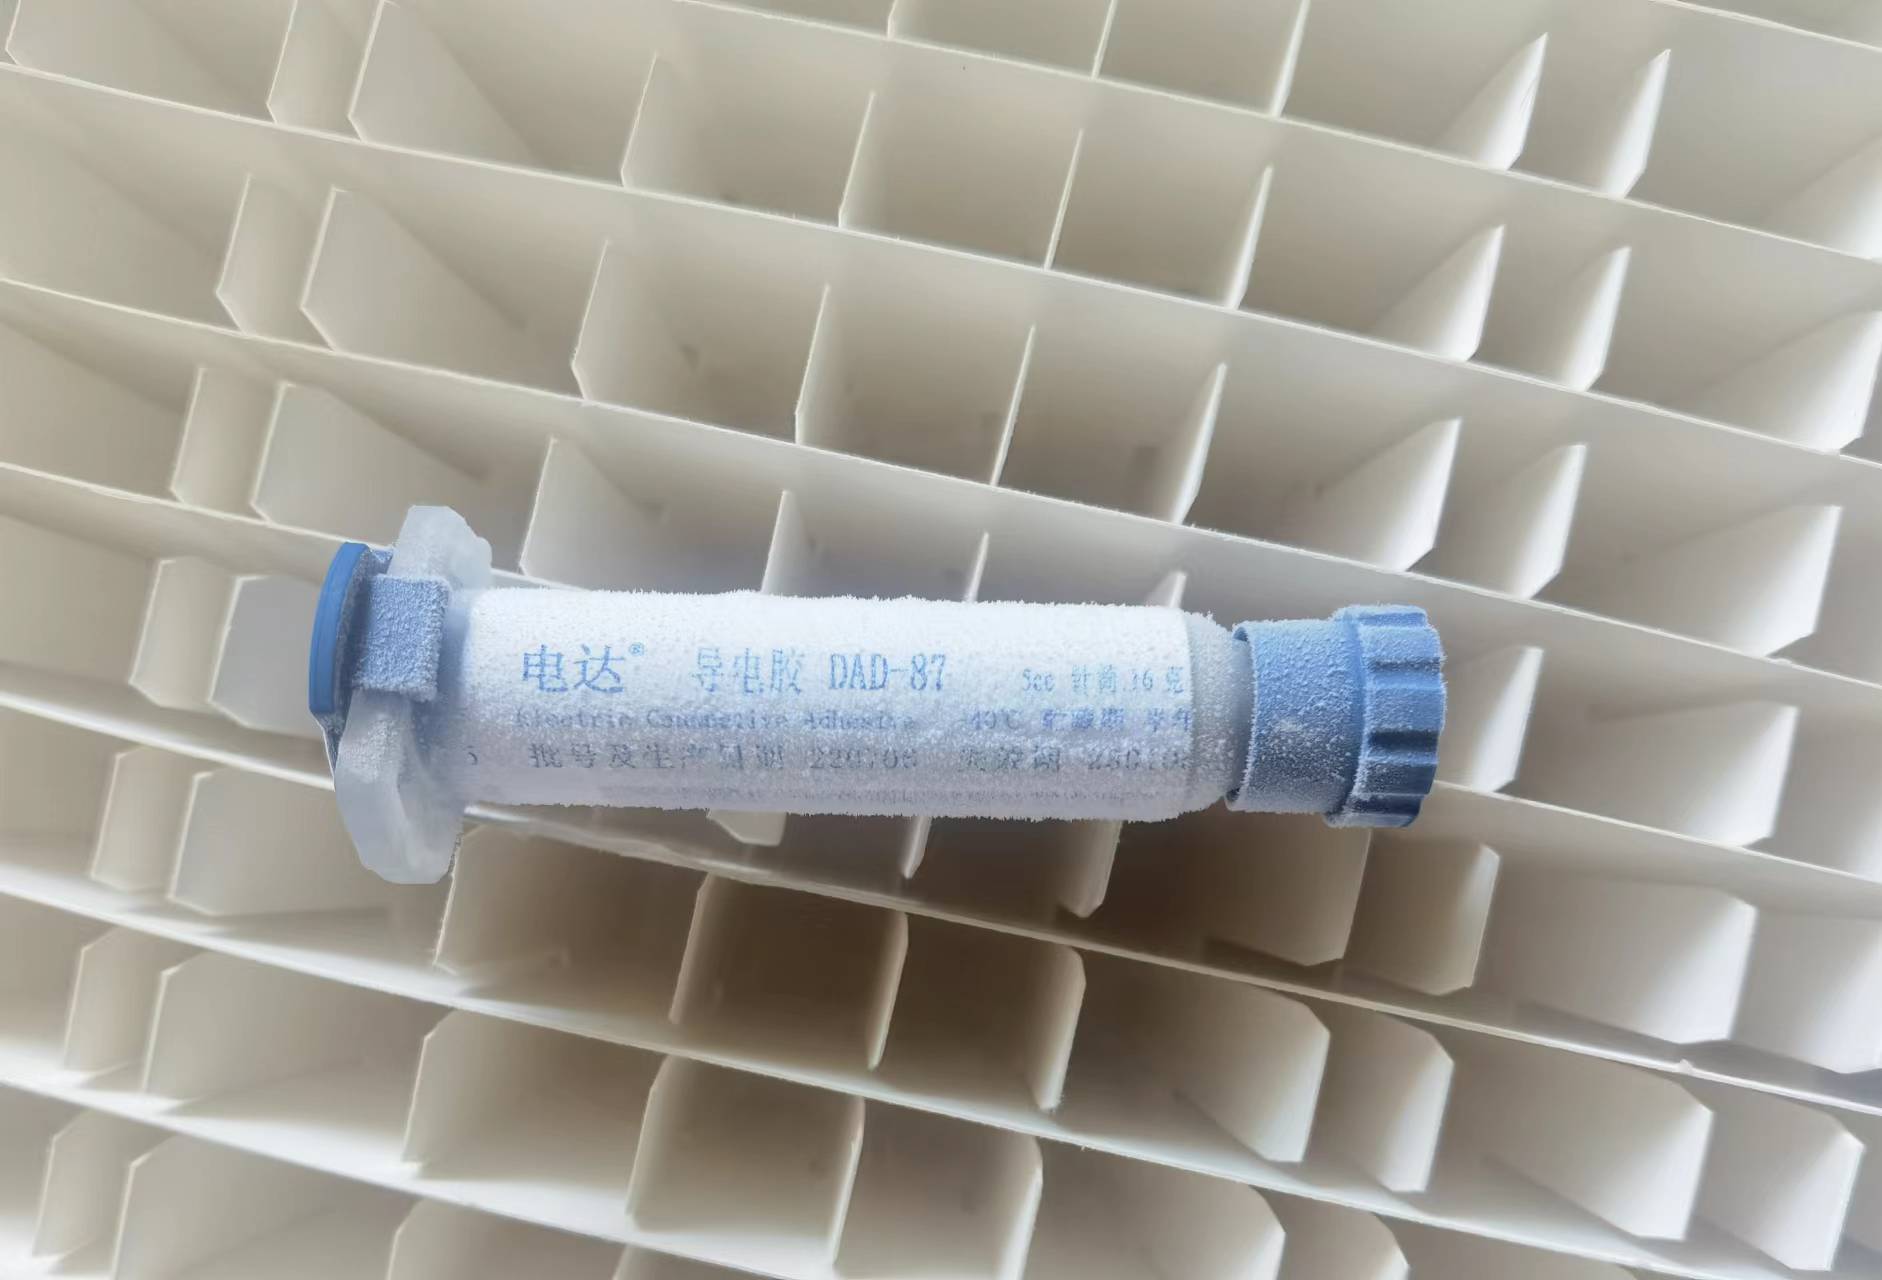 上海塑料所固晶导电银胶电达DAD-87